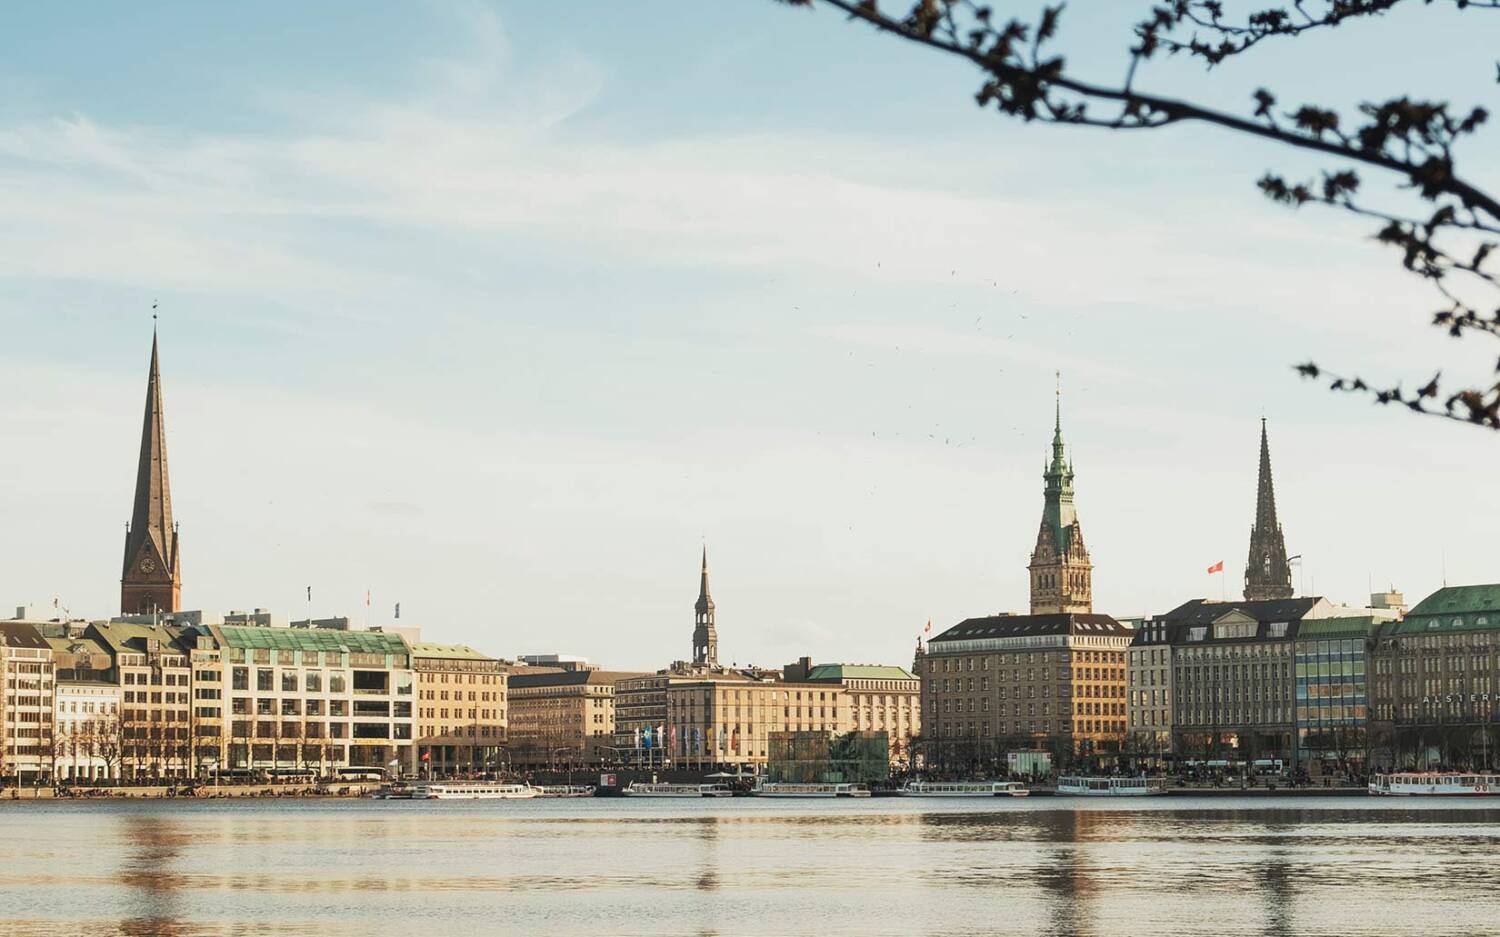 Alster, Elbe, Fleete und Kanäle bieten in Hamburg ausreichend Platz für schwimmende Restaurants / ©Unsplash/Julia Solonina